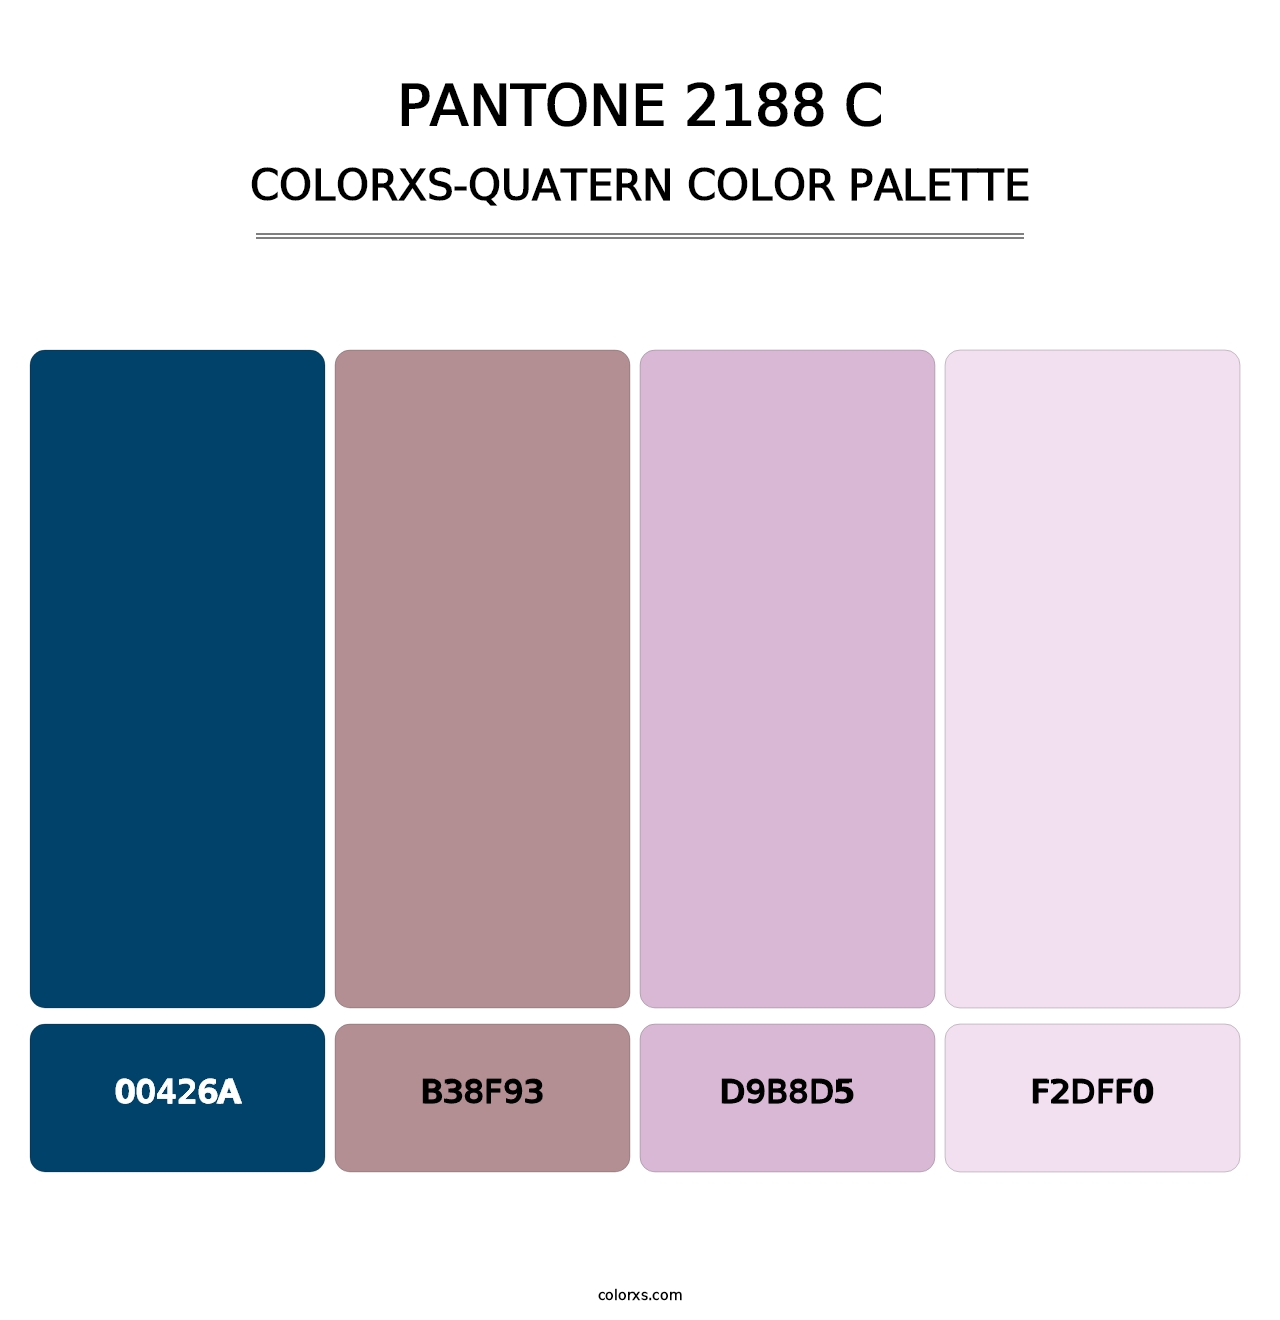 PANTONE 2188 C - Colorxs Quatern Palette